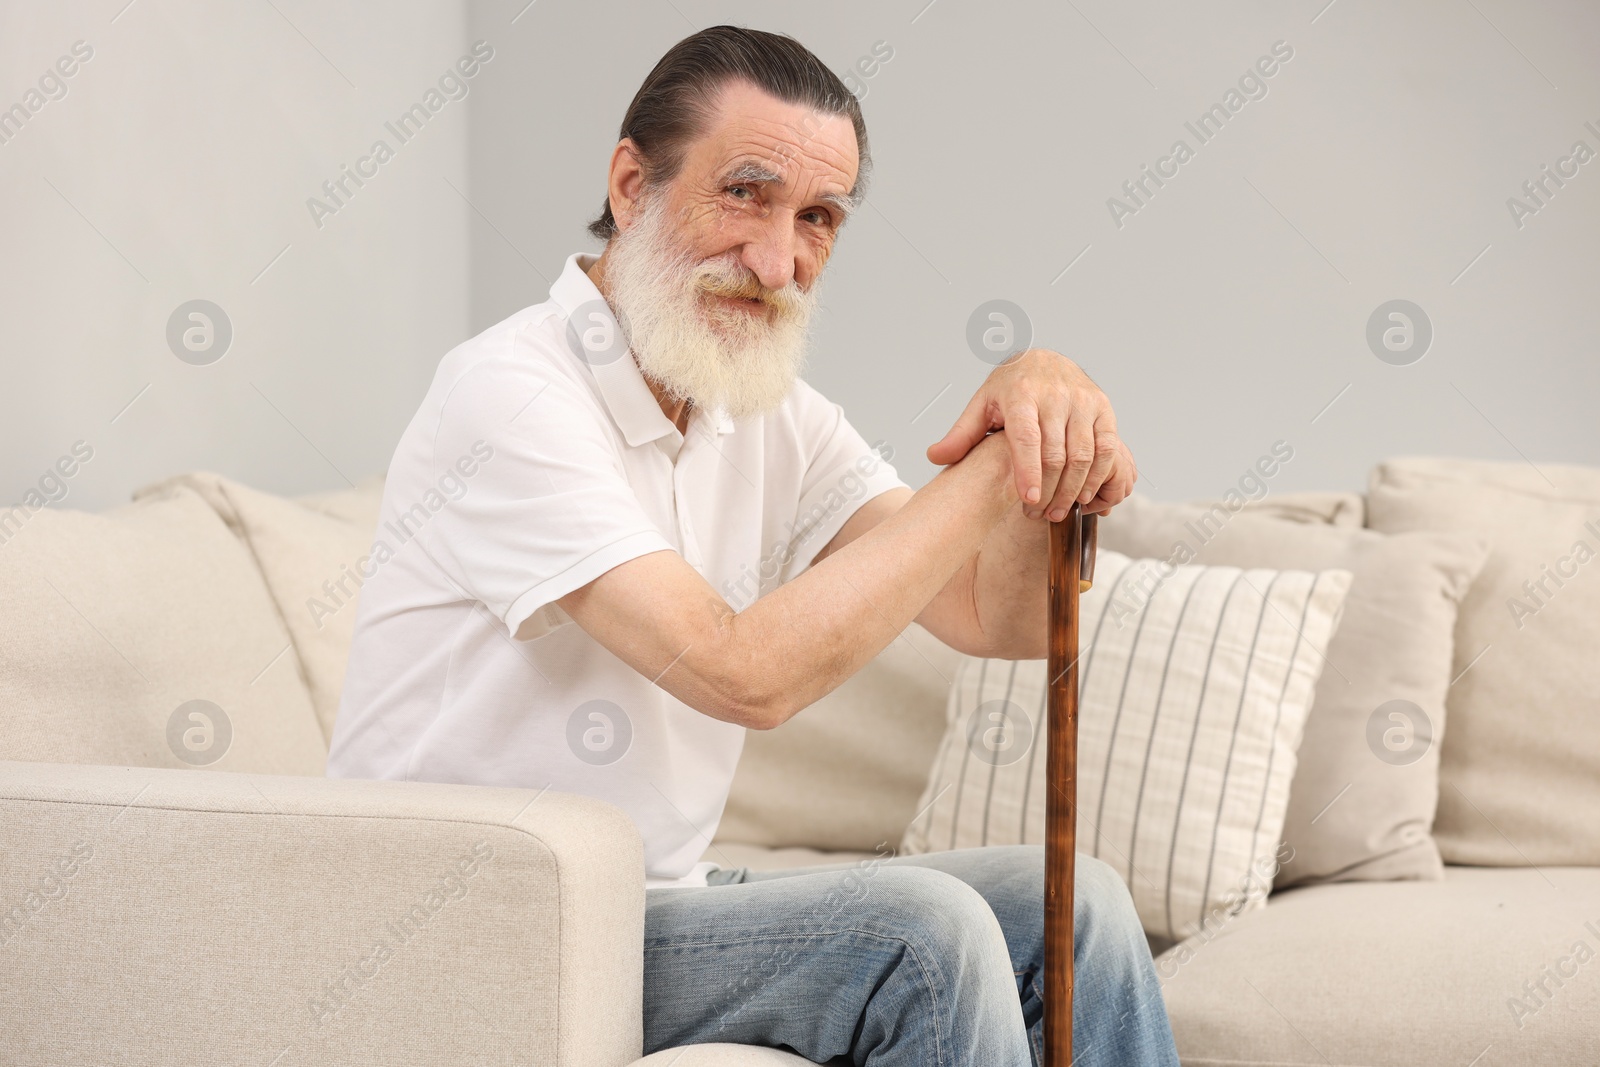 Photo of Senior man with walking cane on sofa indoors